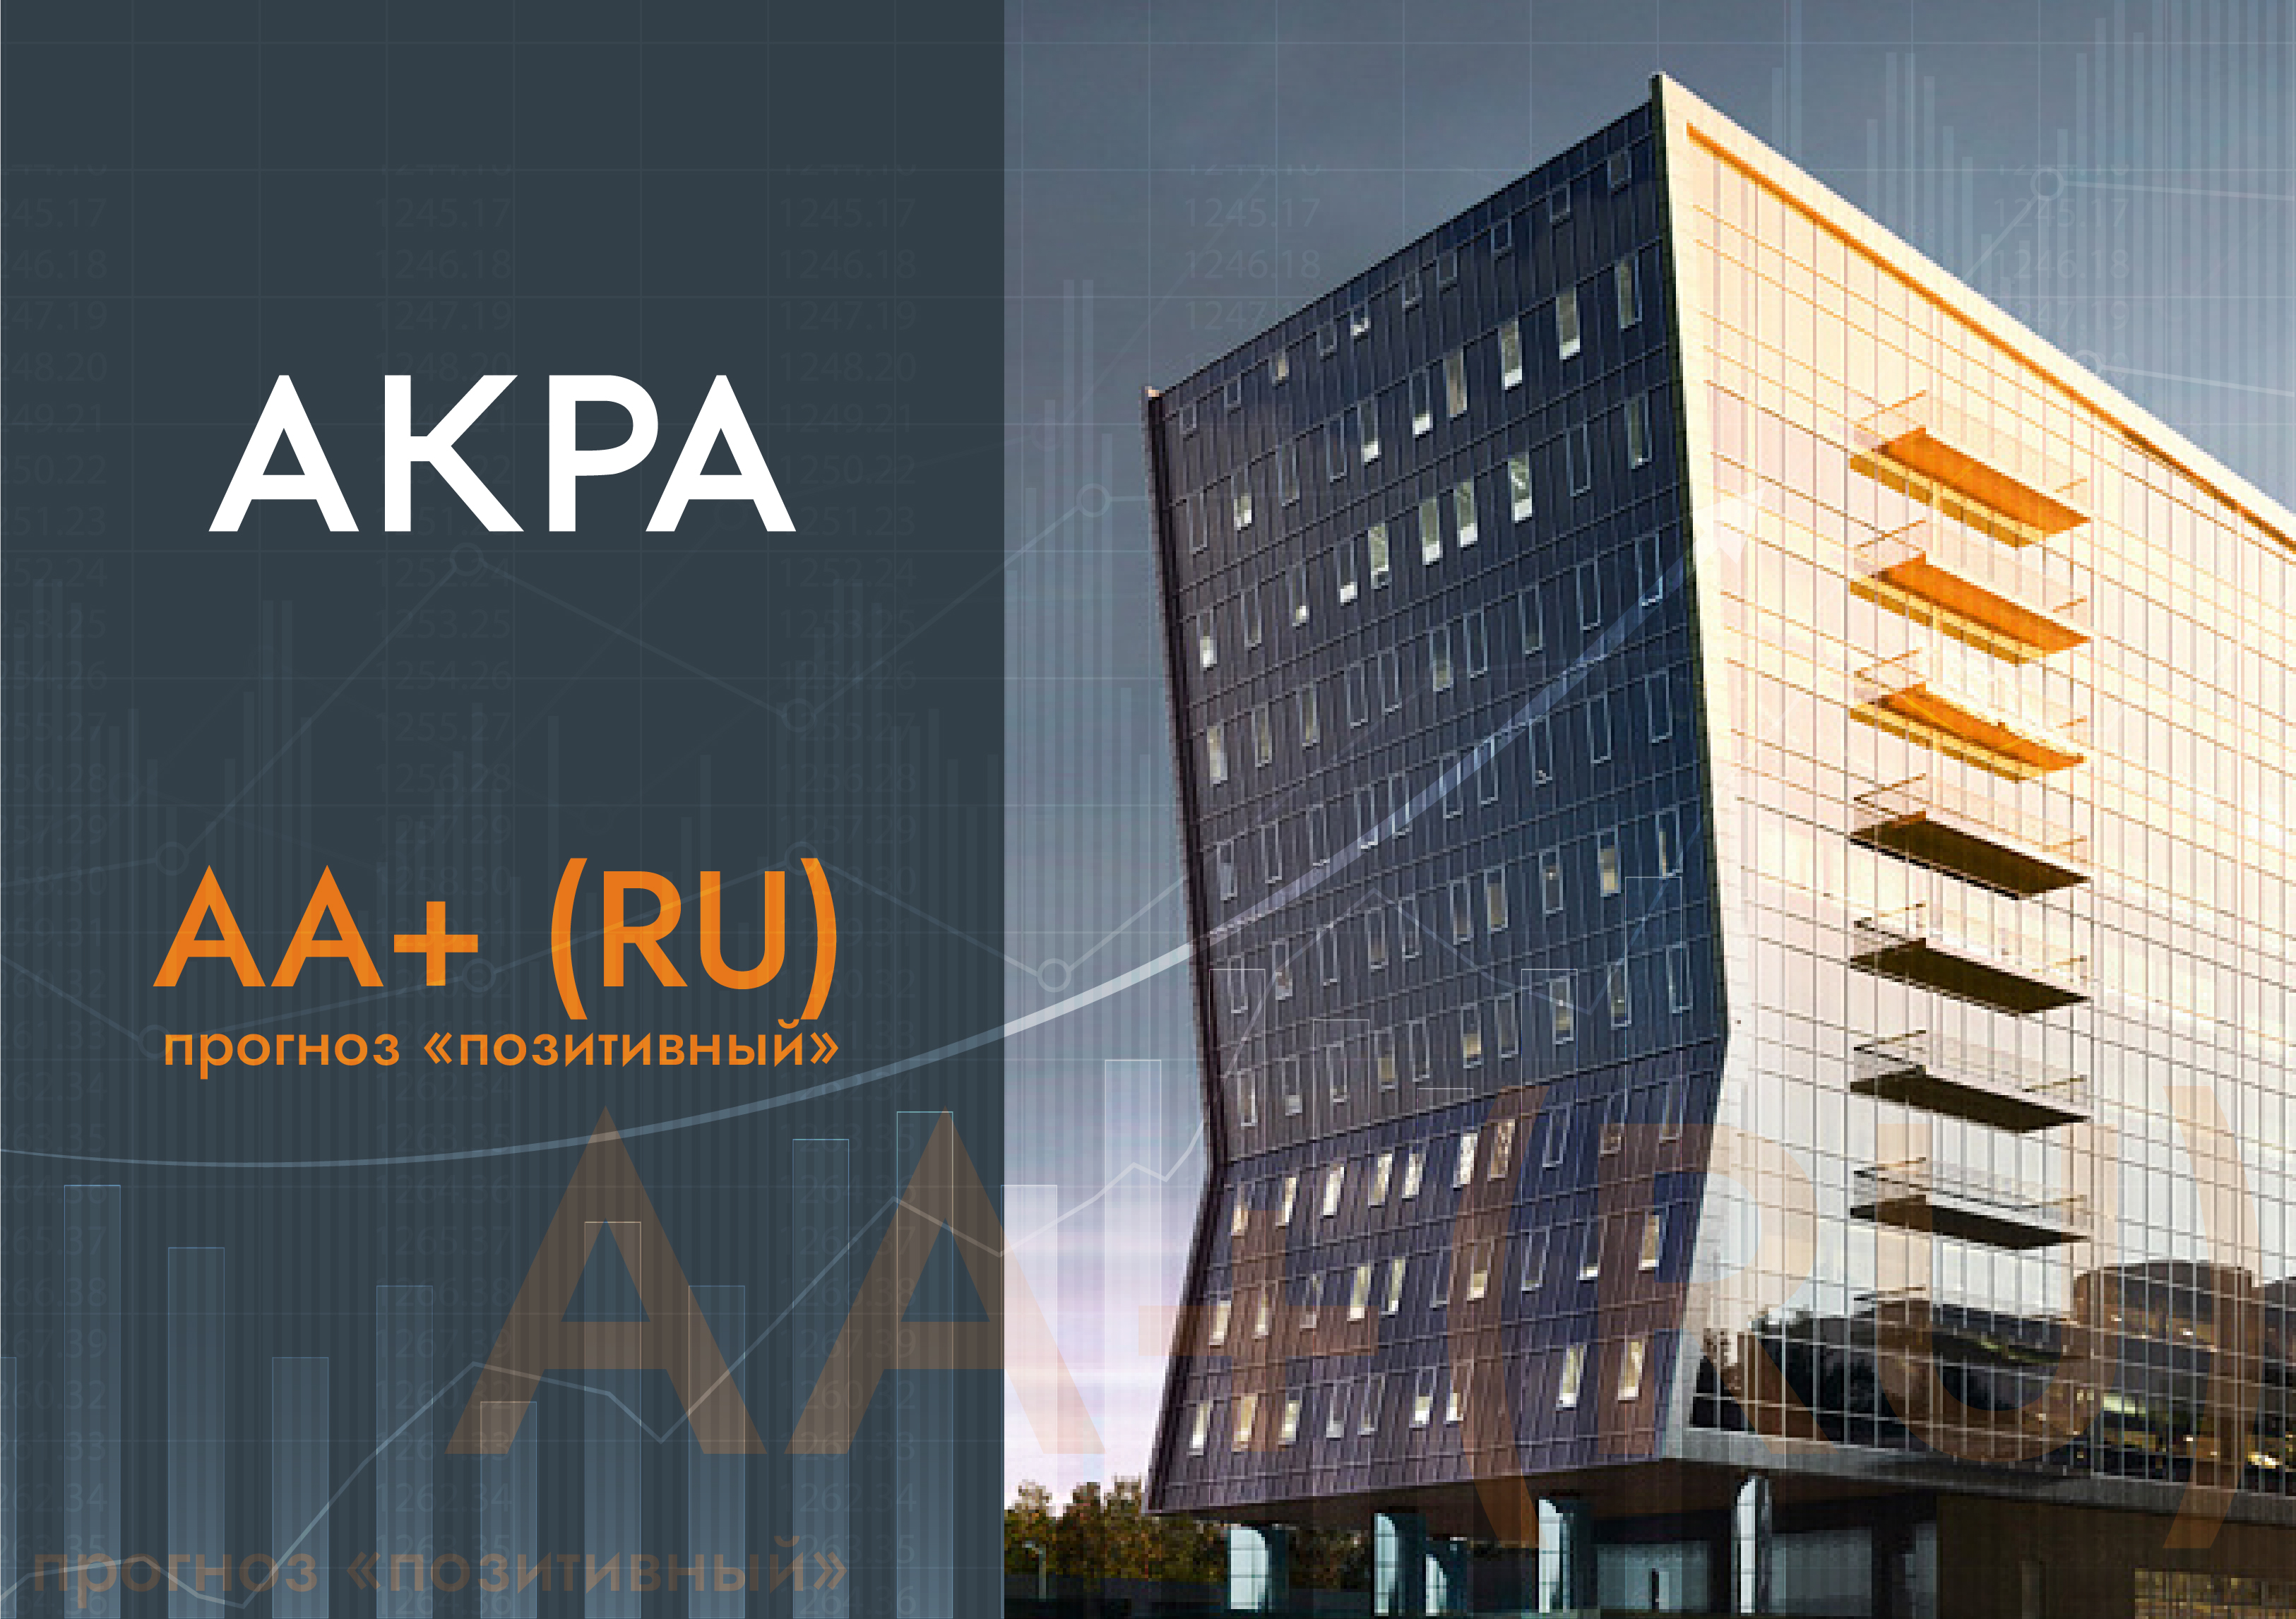 АКРА подтвердило кредитный рейтинг Московской области на уровне АА+ (RU), прогноз «позитивный»